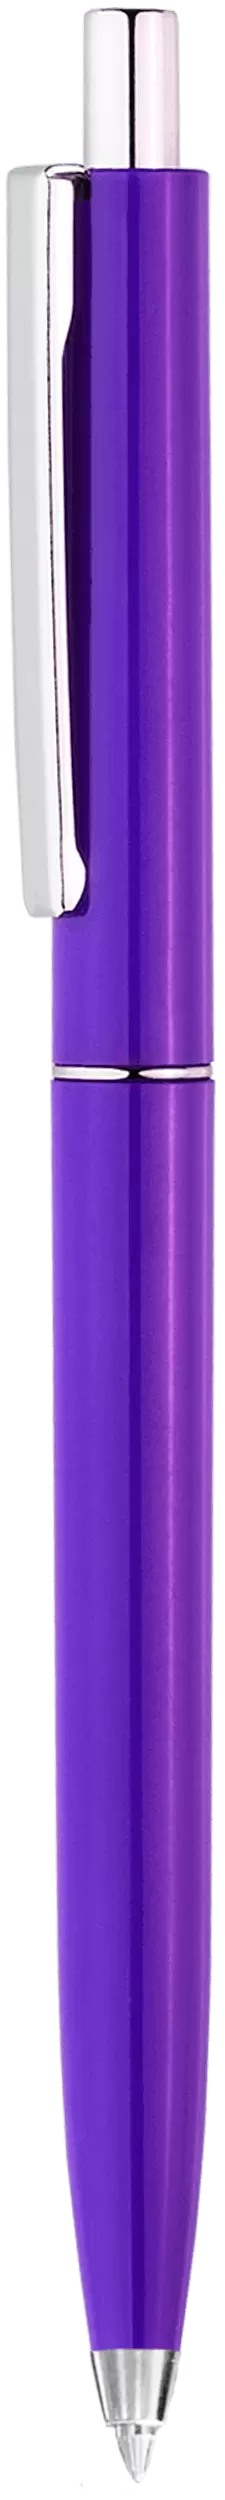 Ручка TOP Фиолетовая 2016-11